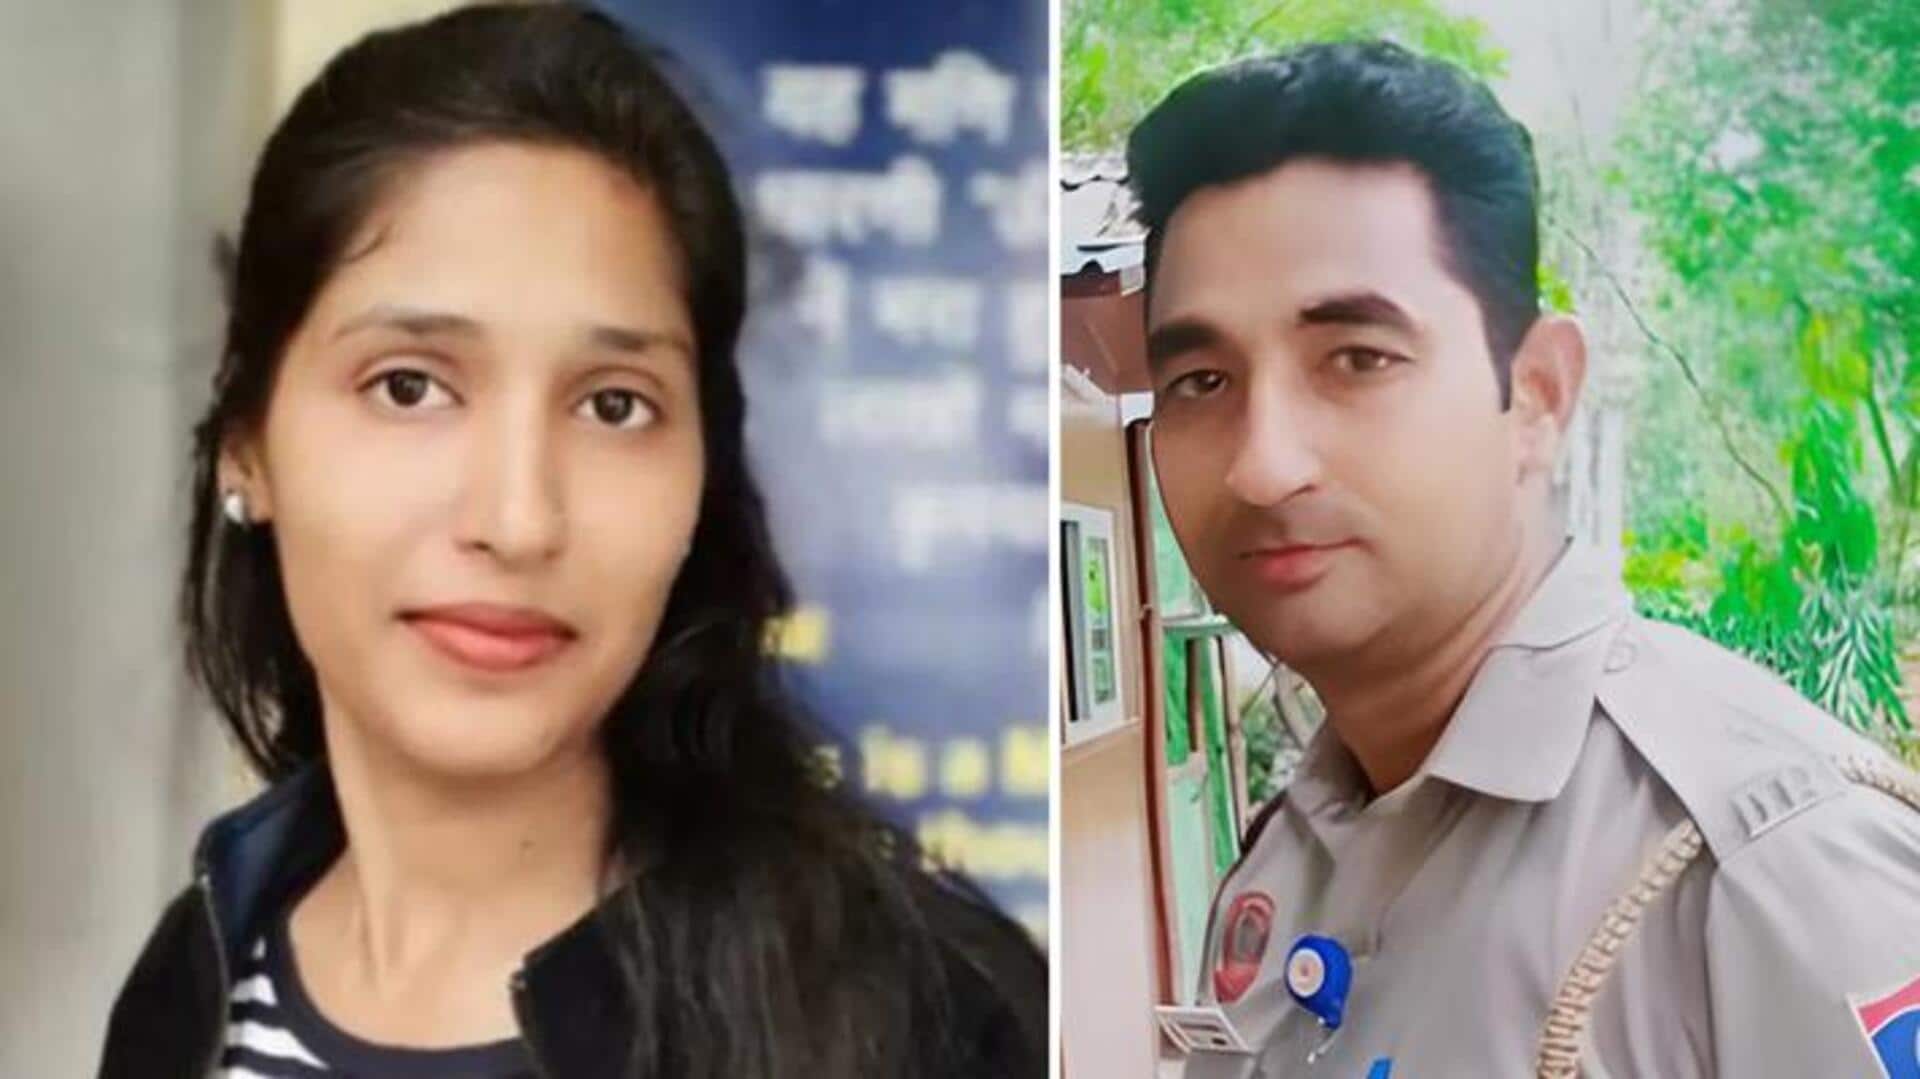 दिल्ली: पुलिसकर्मी ने पूर्व महिला कांस्टेबल की हत्या कर किया गुमराह, 2 साल तक 'जिंदा' रखा